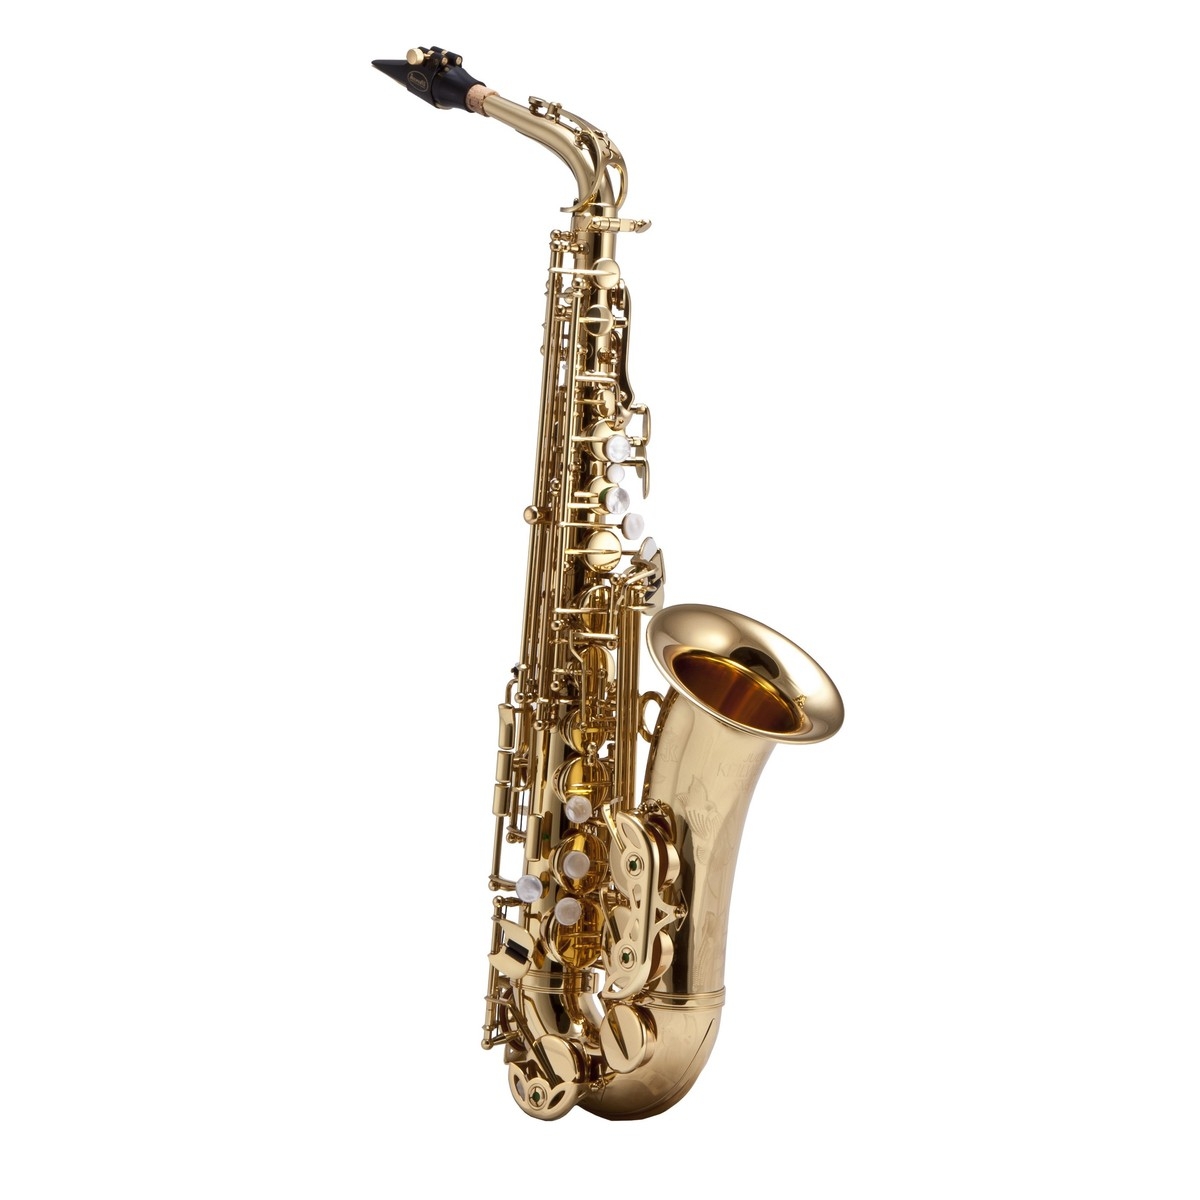 KEILWERTH SX90R - Saxophone alto laiton verni, avec étui et bec complet - JK2400-8-0